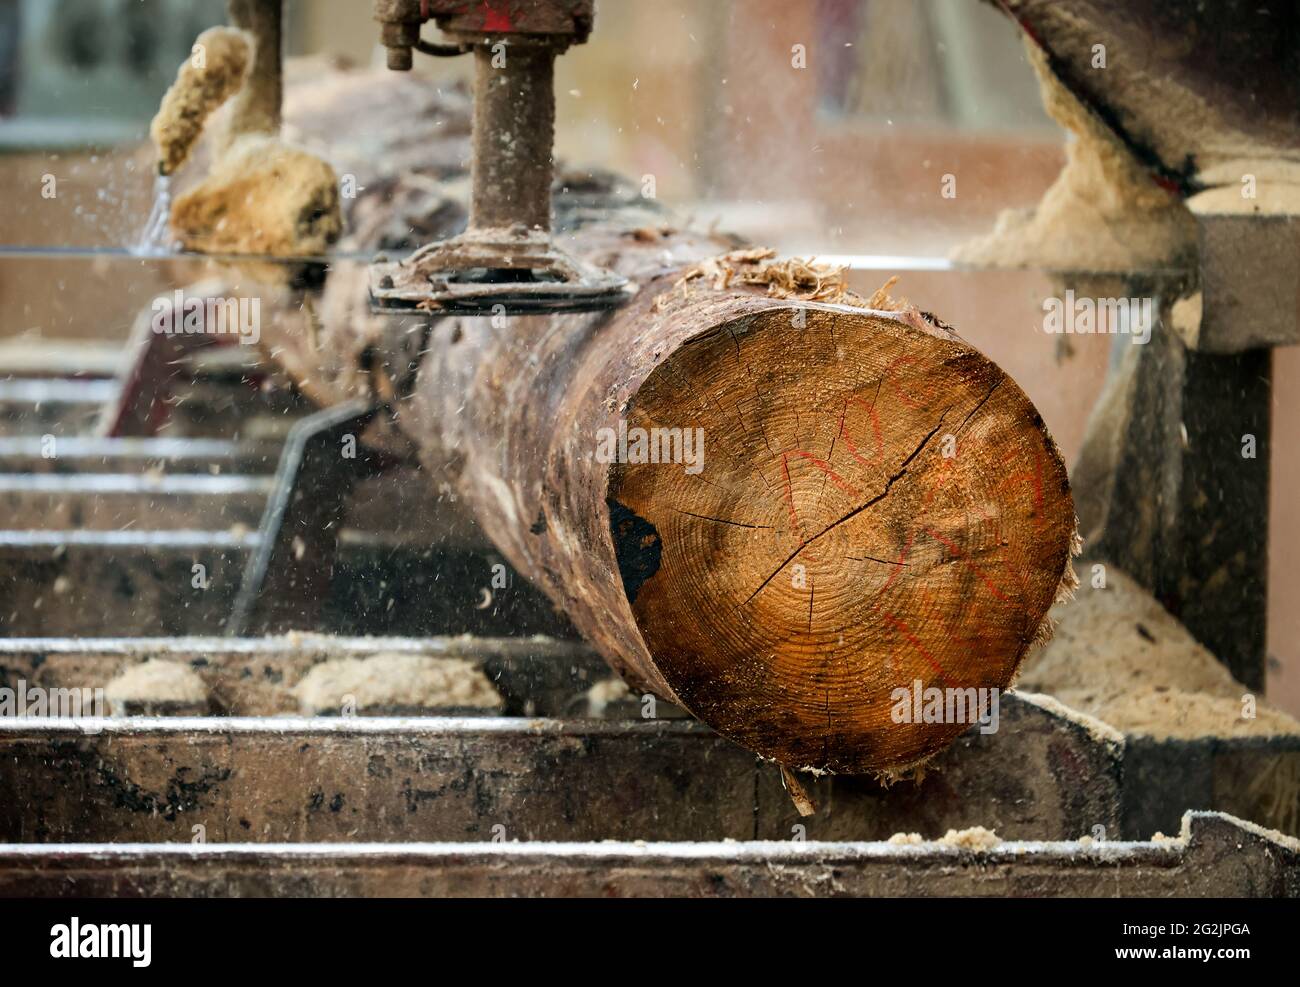 Solingen, Rhénanie-du-Nord-Westphalie, Allemagne - tronc d'épinette, ici le bois d'épicéa infesté par des coléoptères d'écorce, le bois de coléoptère, est transformé en bois de construction, le bois de construction est rare et cher, les charpentiers et les menuisiers sont aux prises avec la hausse rapide des prix du bois brut en temps de la crise de la couronne, De grandes quantités de bois de tige sont exportées en Chine et aux États-Unis. Banque D'Images